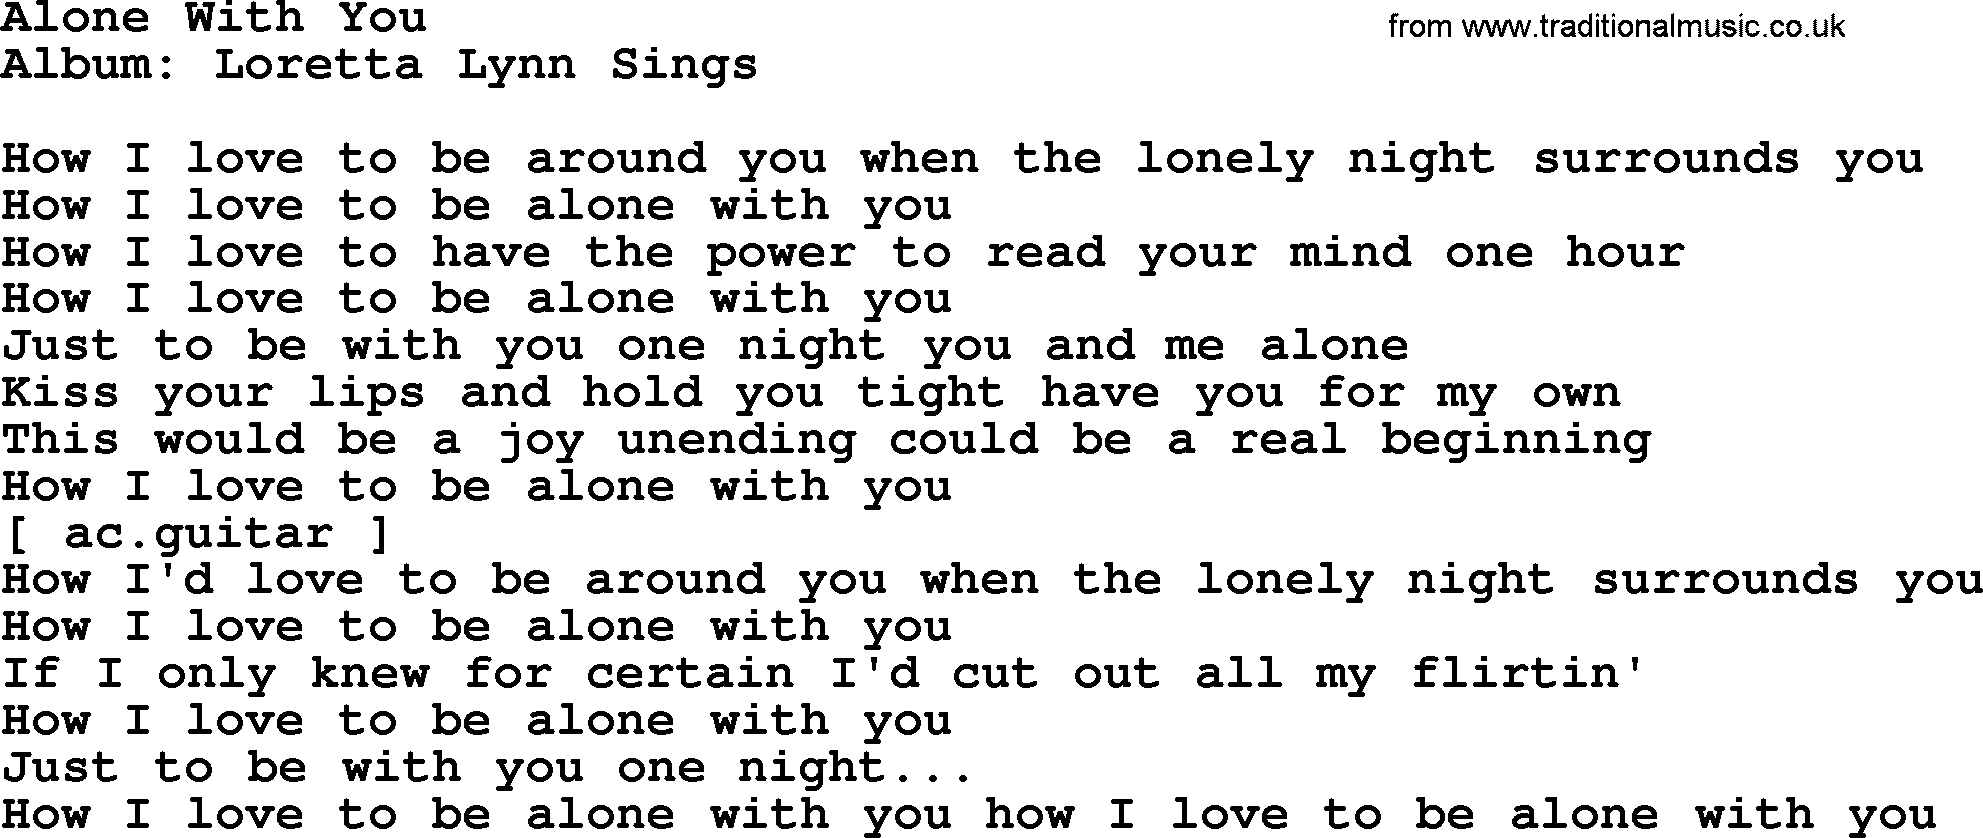 Loretta Lynn song: Alone With You lyrics